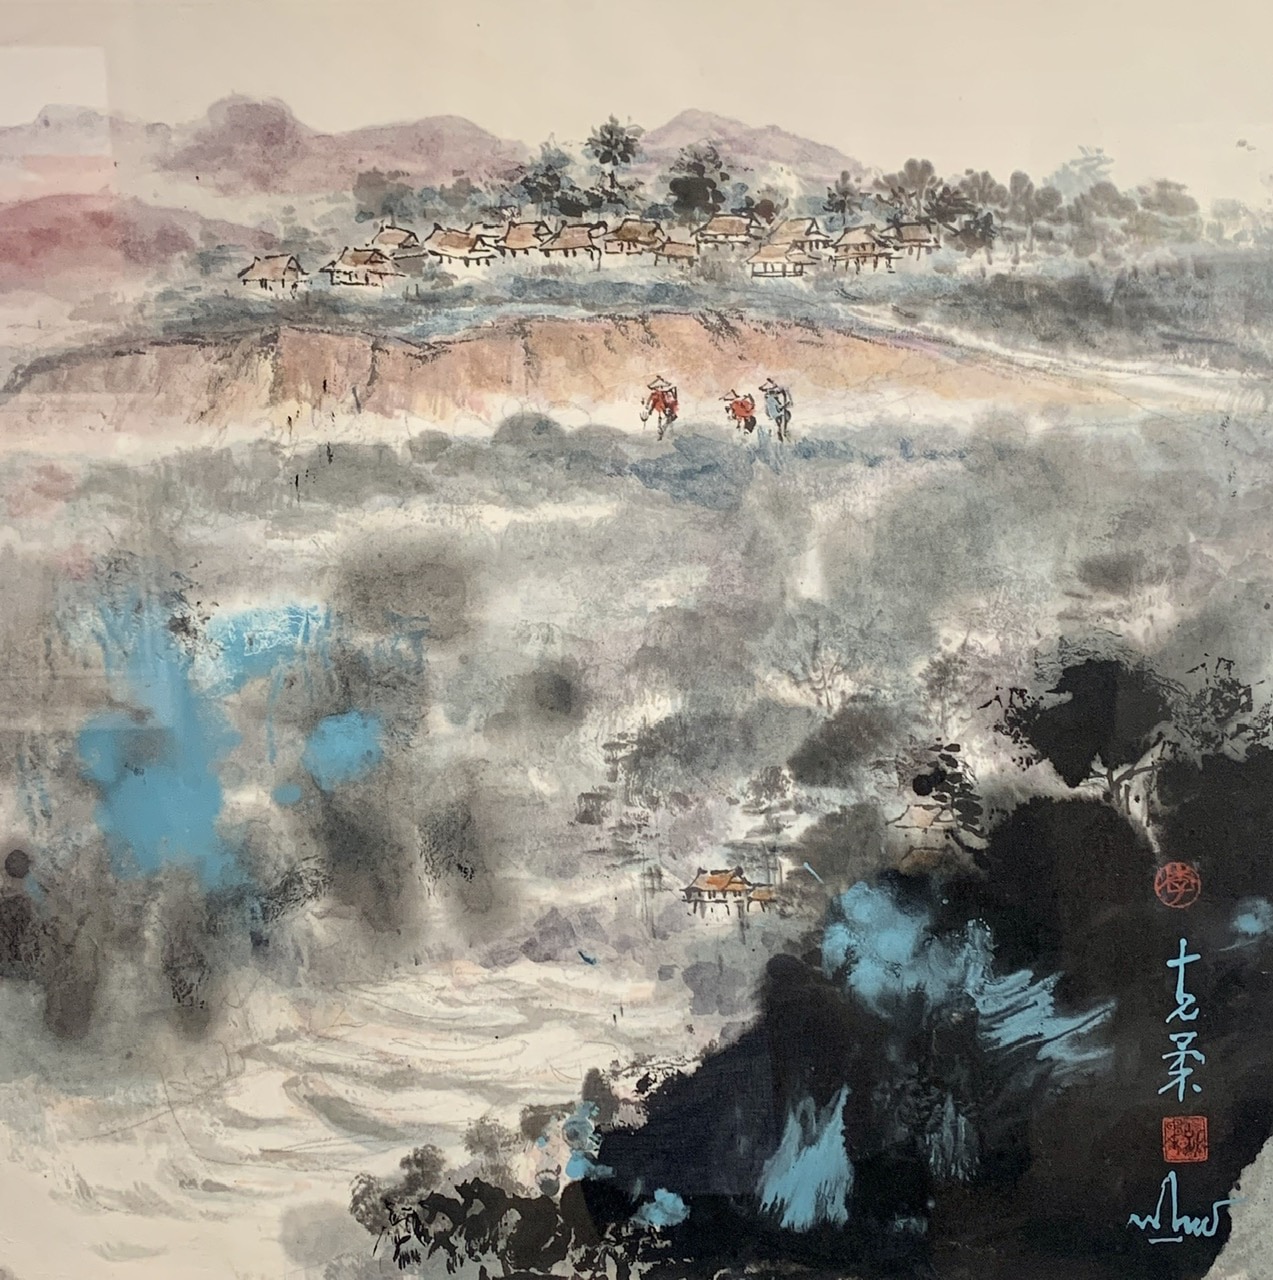 Phong cảnh Pù Luông của họa sĩ Lý Khắc Nhu